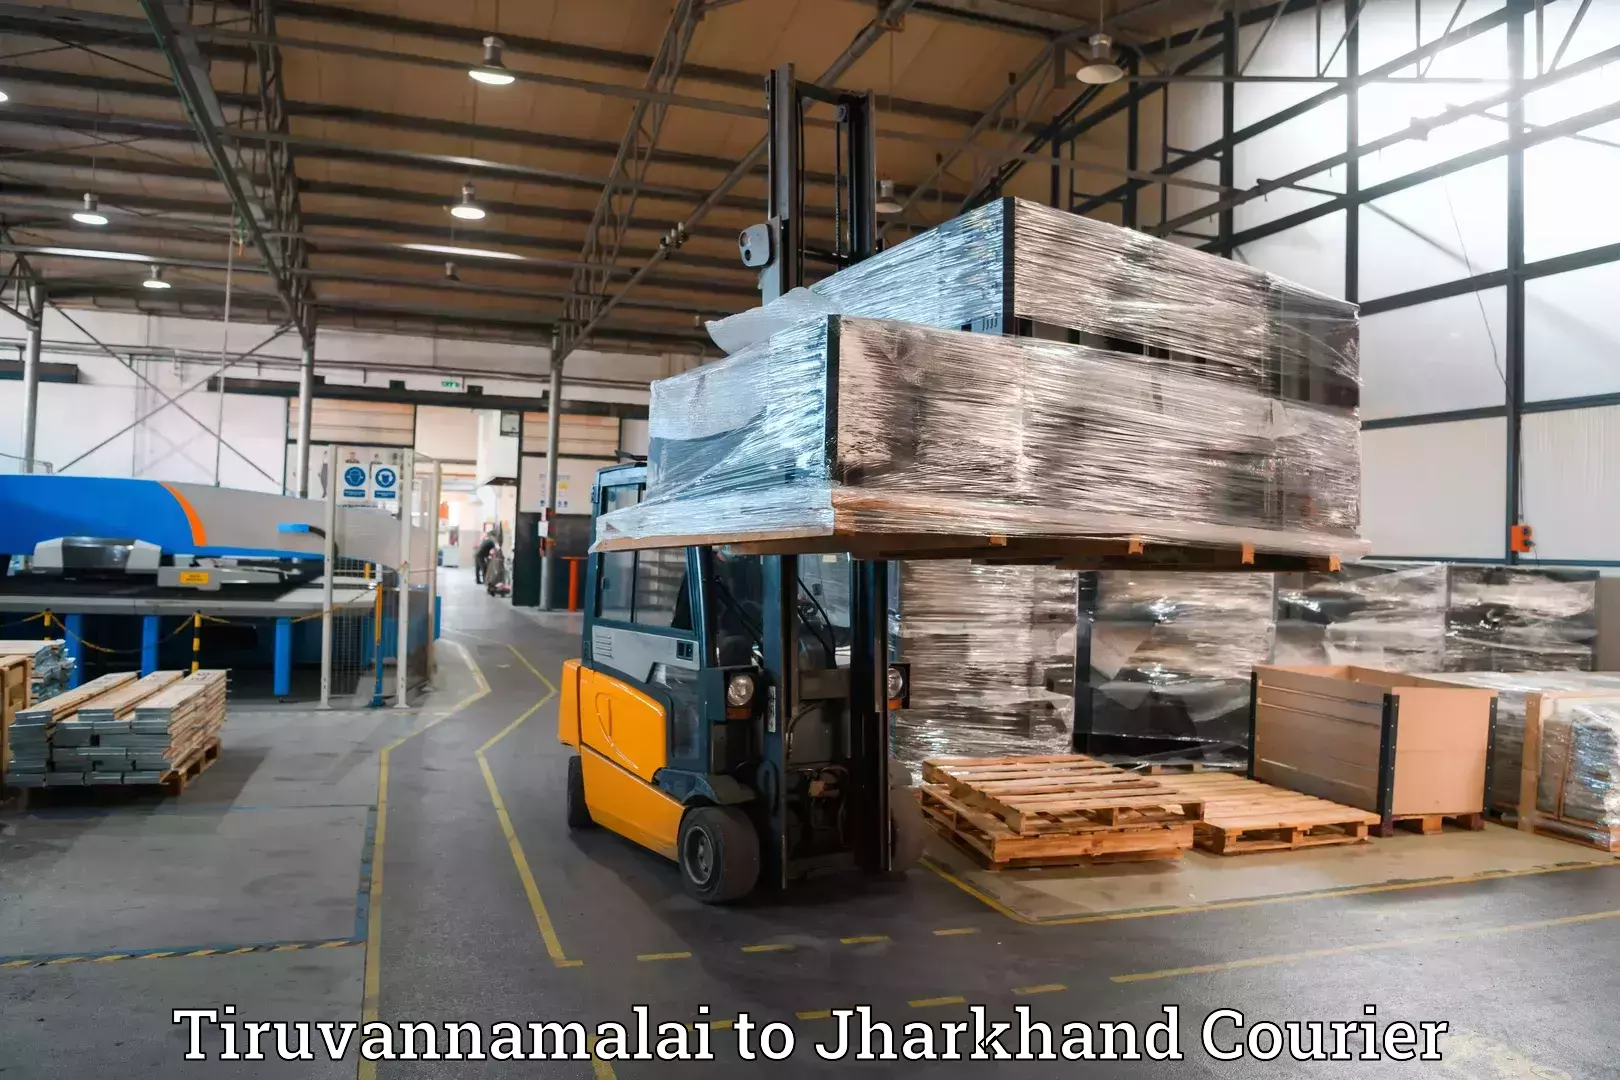 Luggage transport operations Tiruvannamalai to Jharkhand